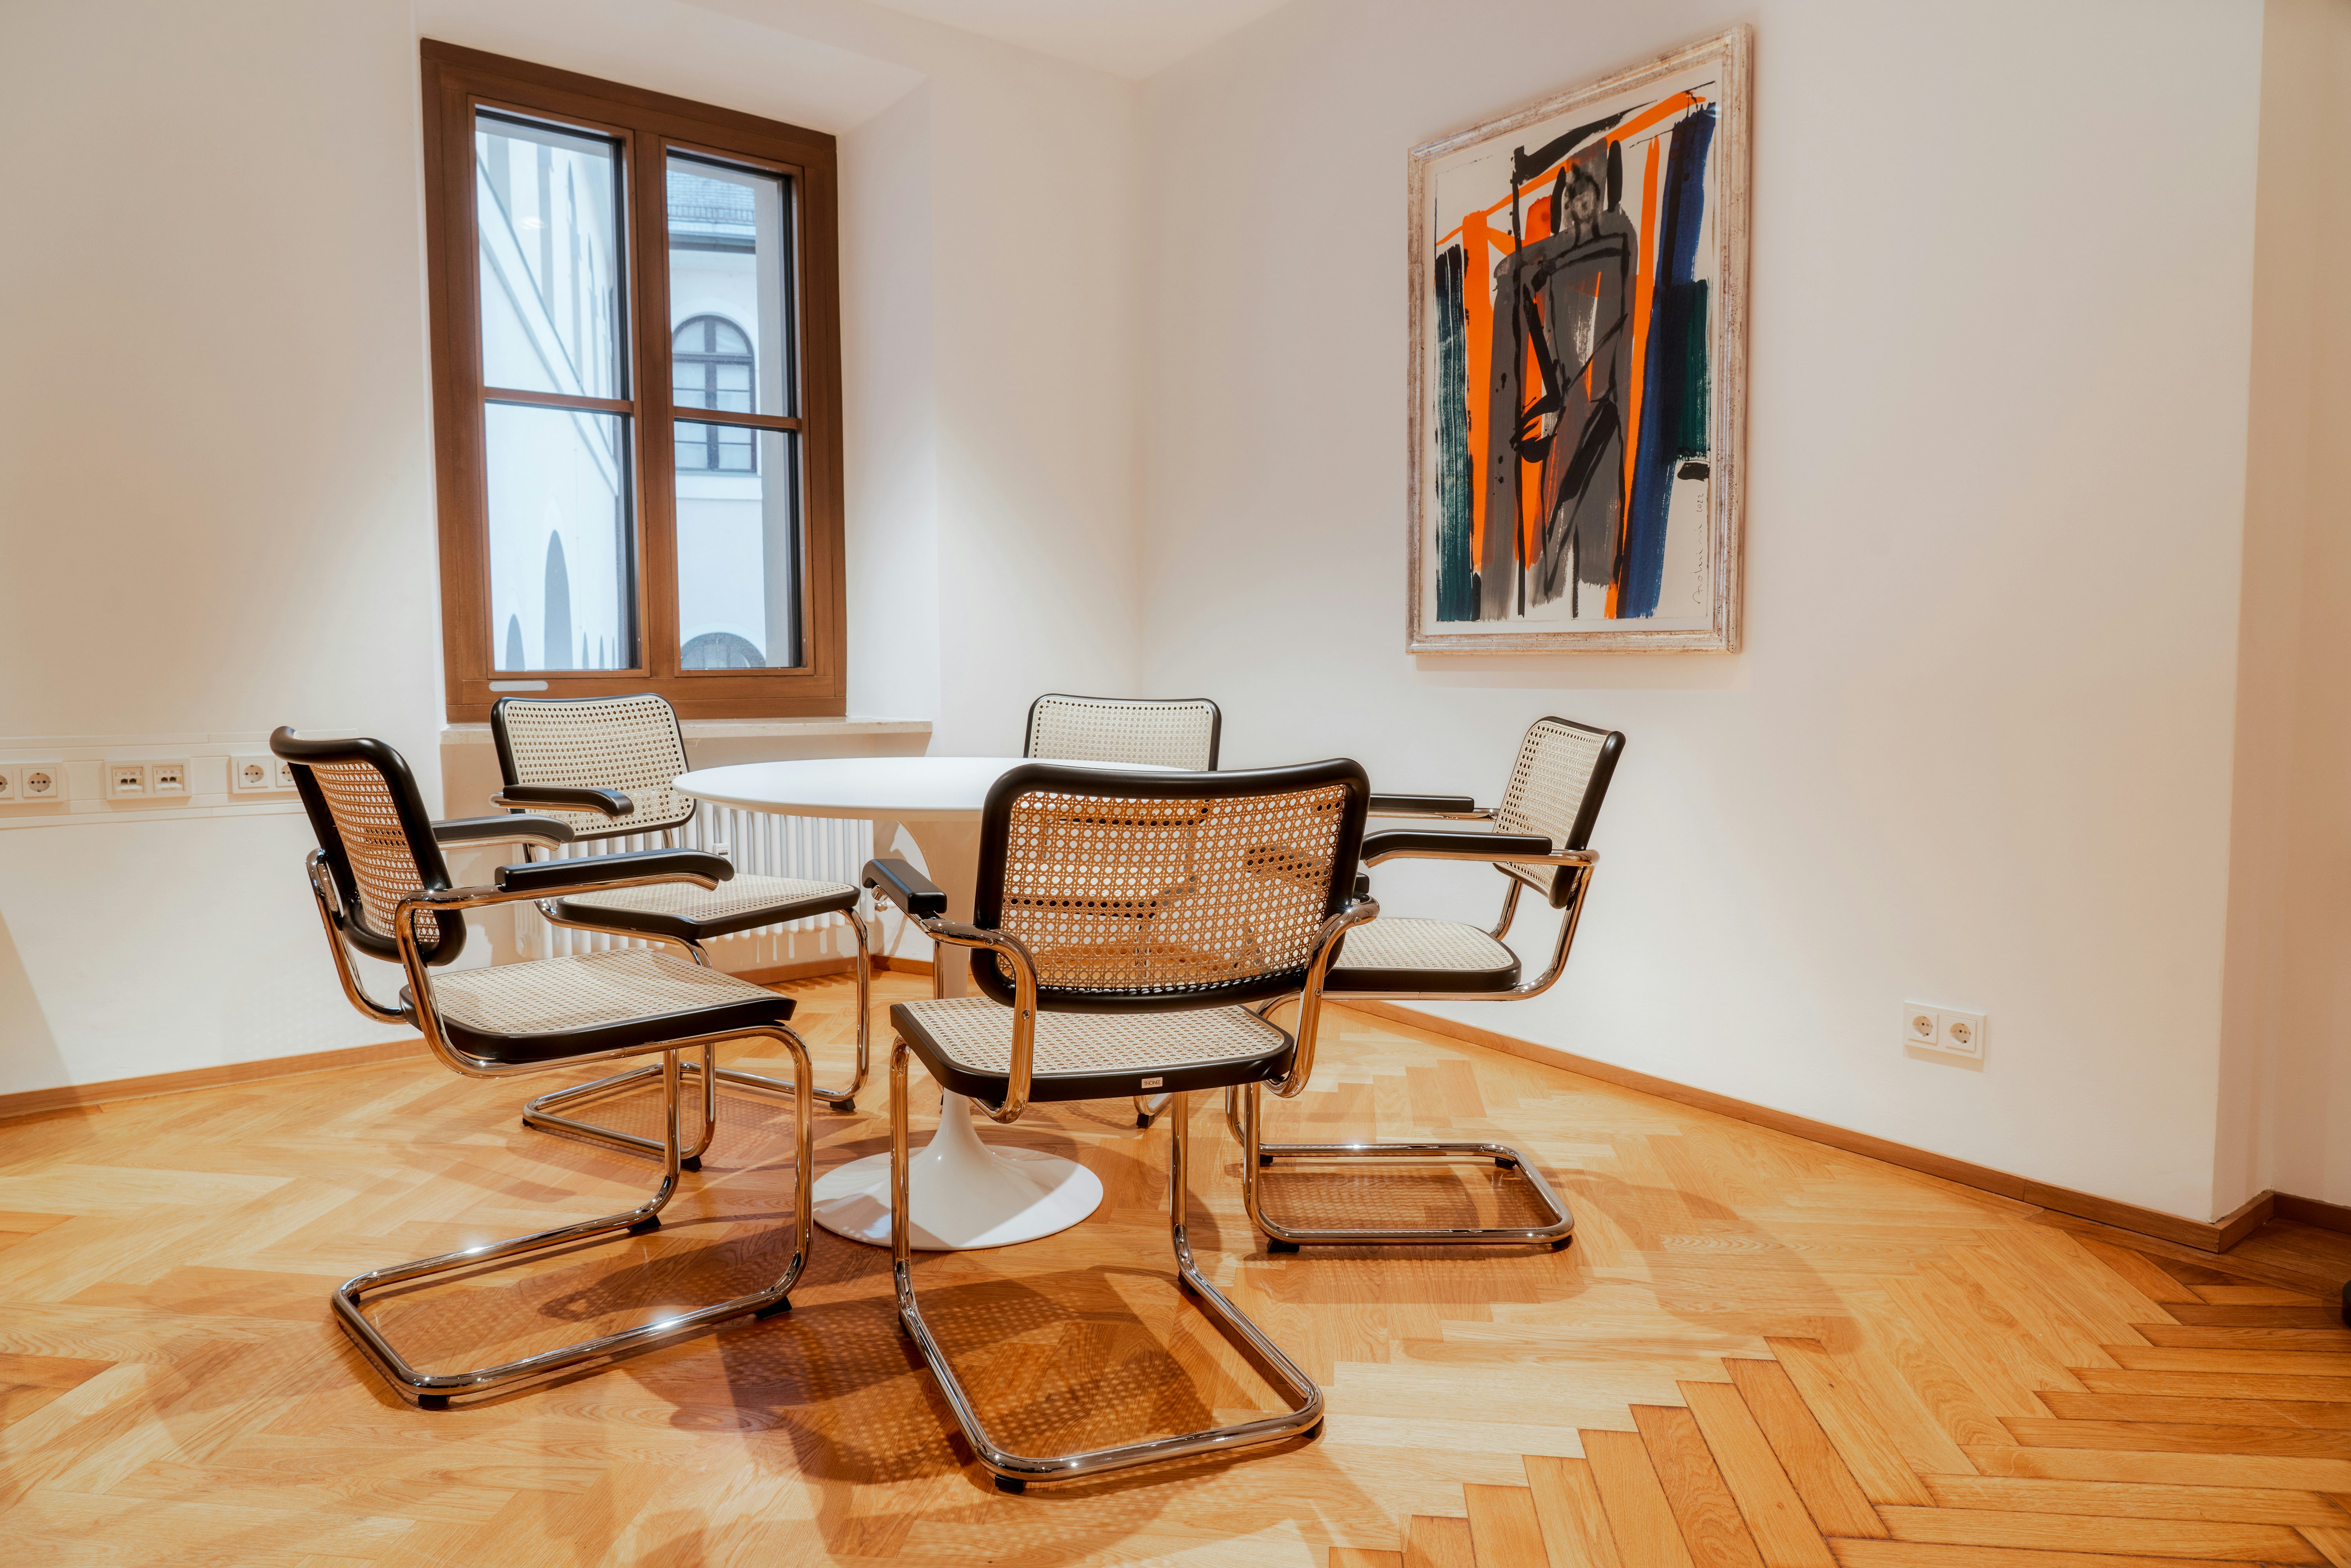 Rädlinger Standort Regensburg: Büro mit Besprechungstisch und Stühlen von innen